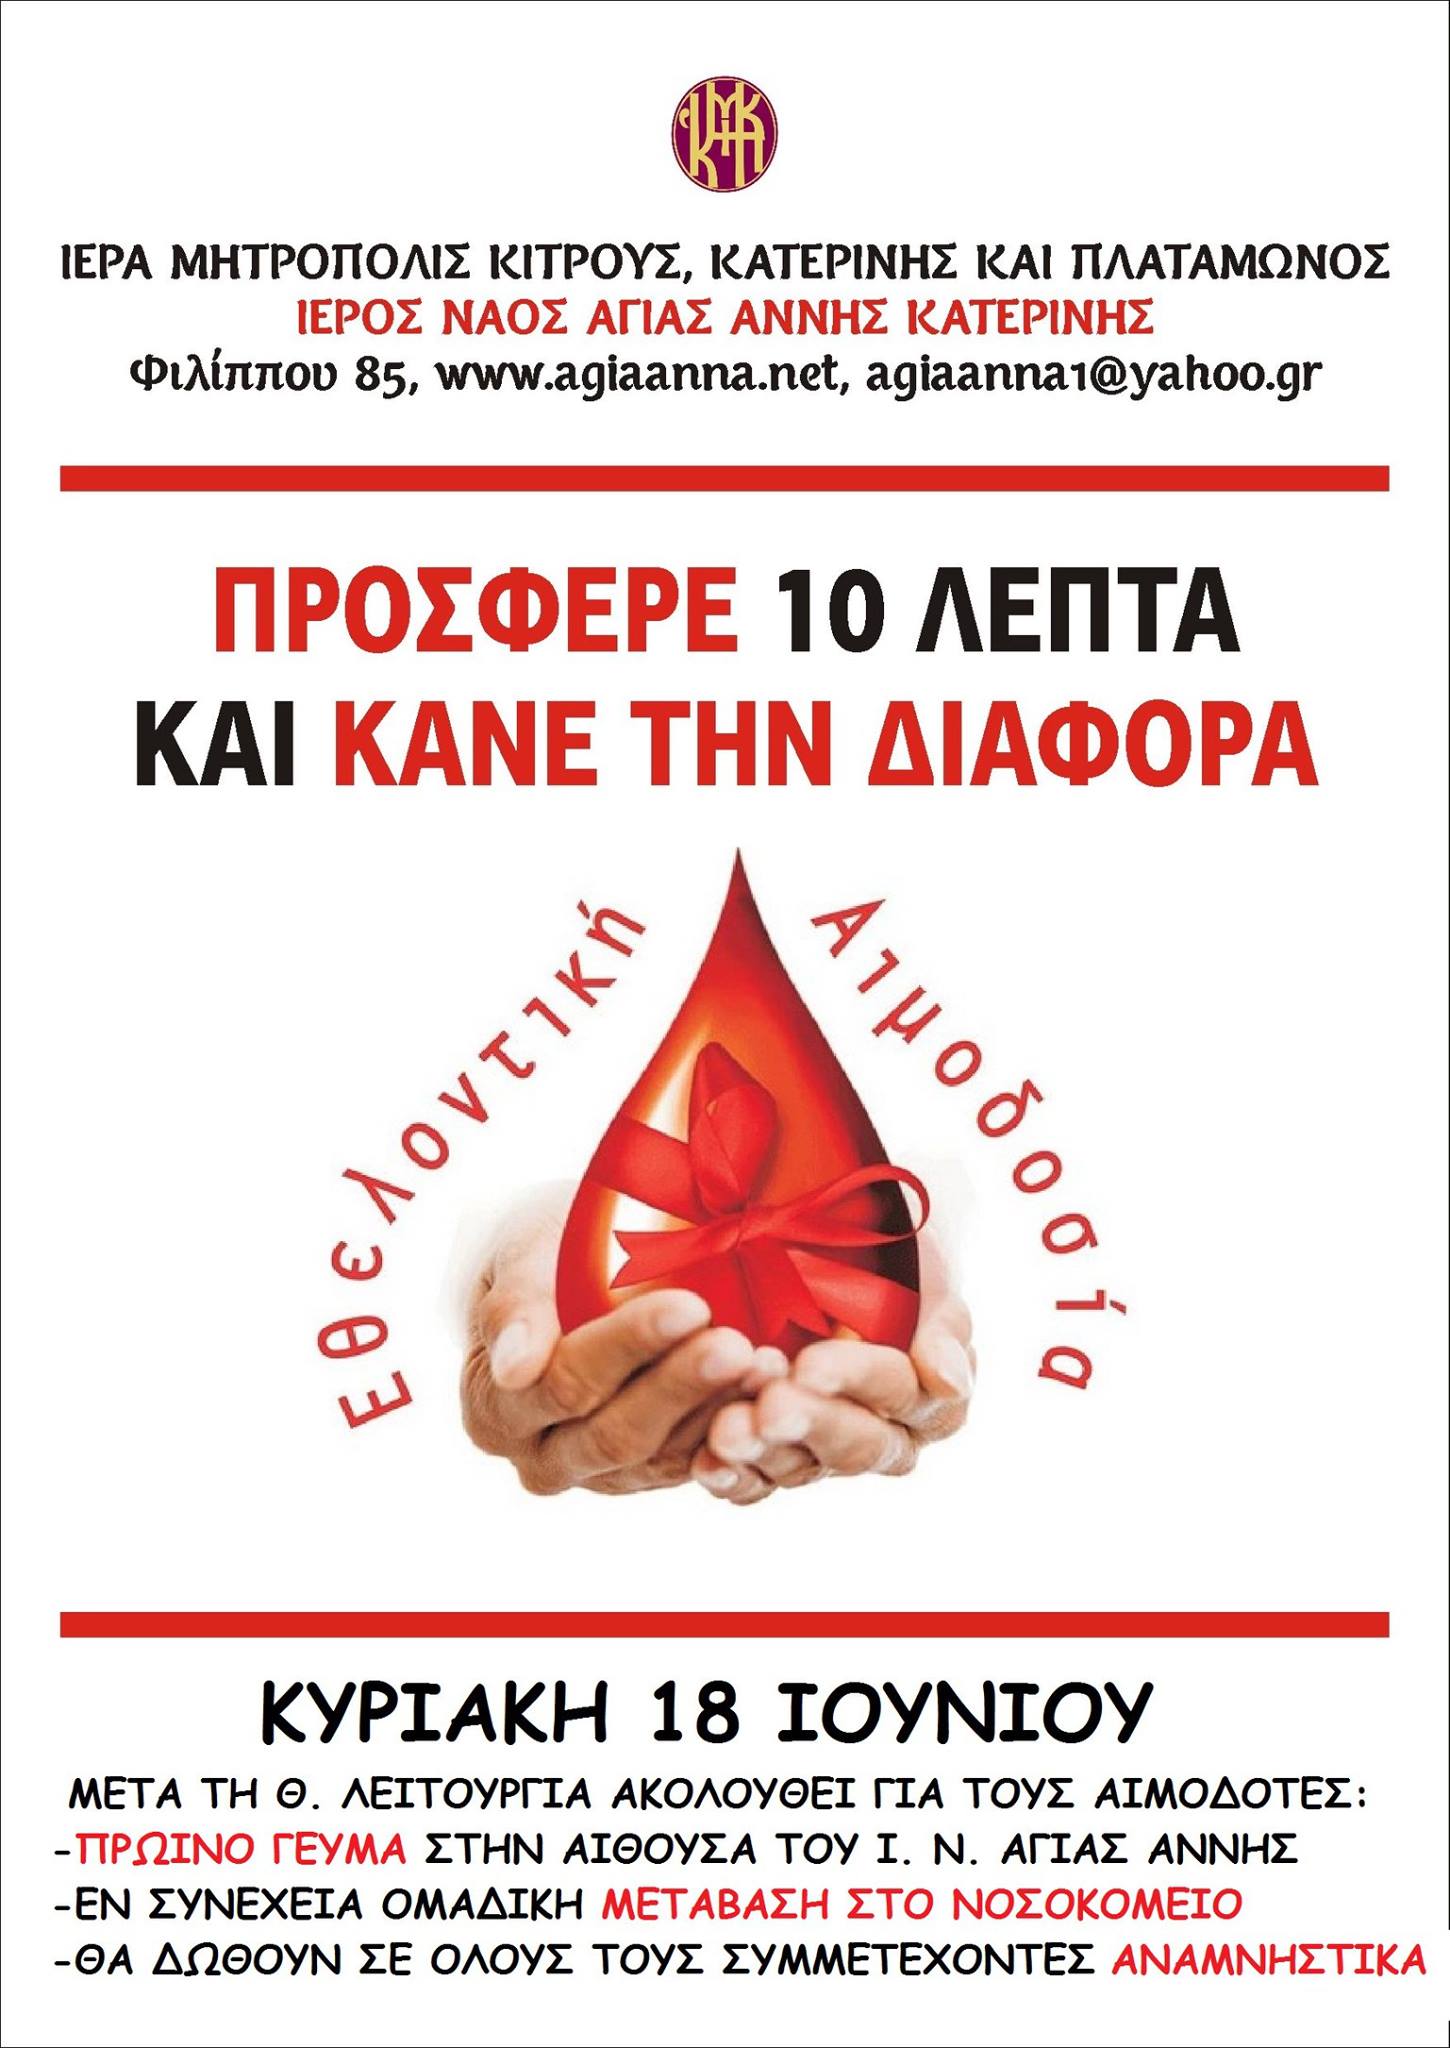 Εθελοντική αιμοδοσία την Κυριακή 18 Ιουνίου 2017